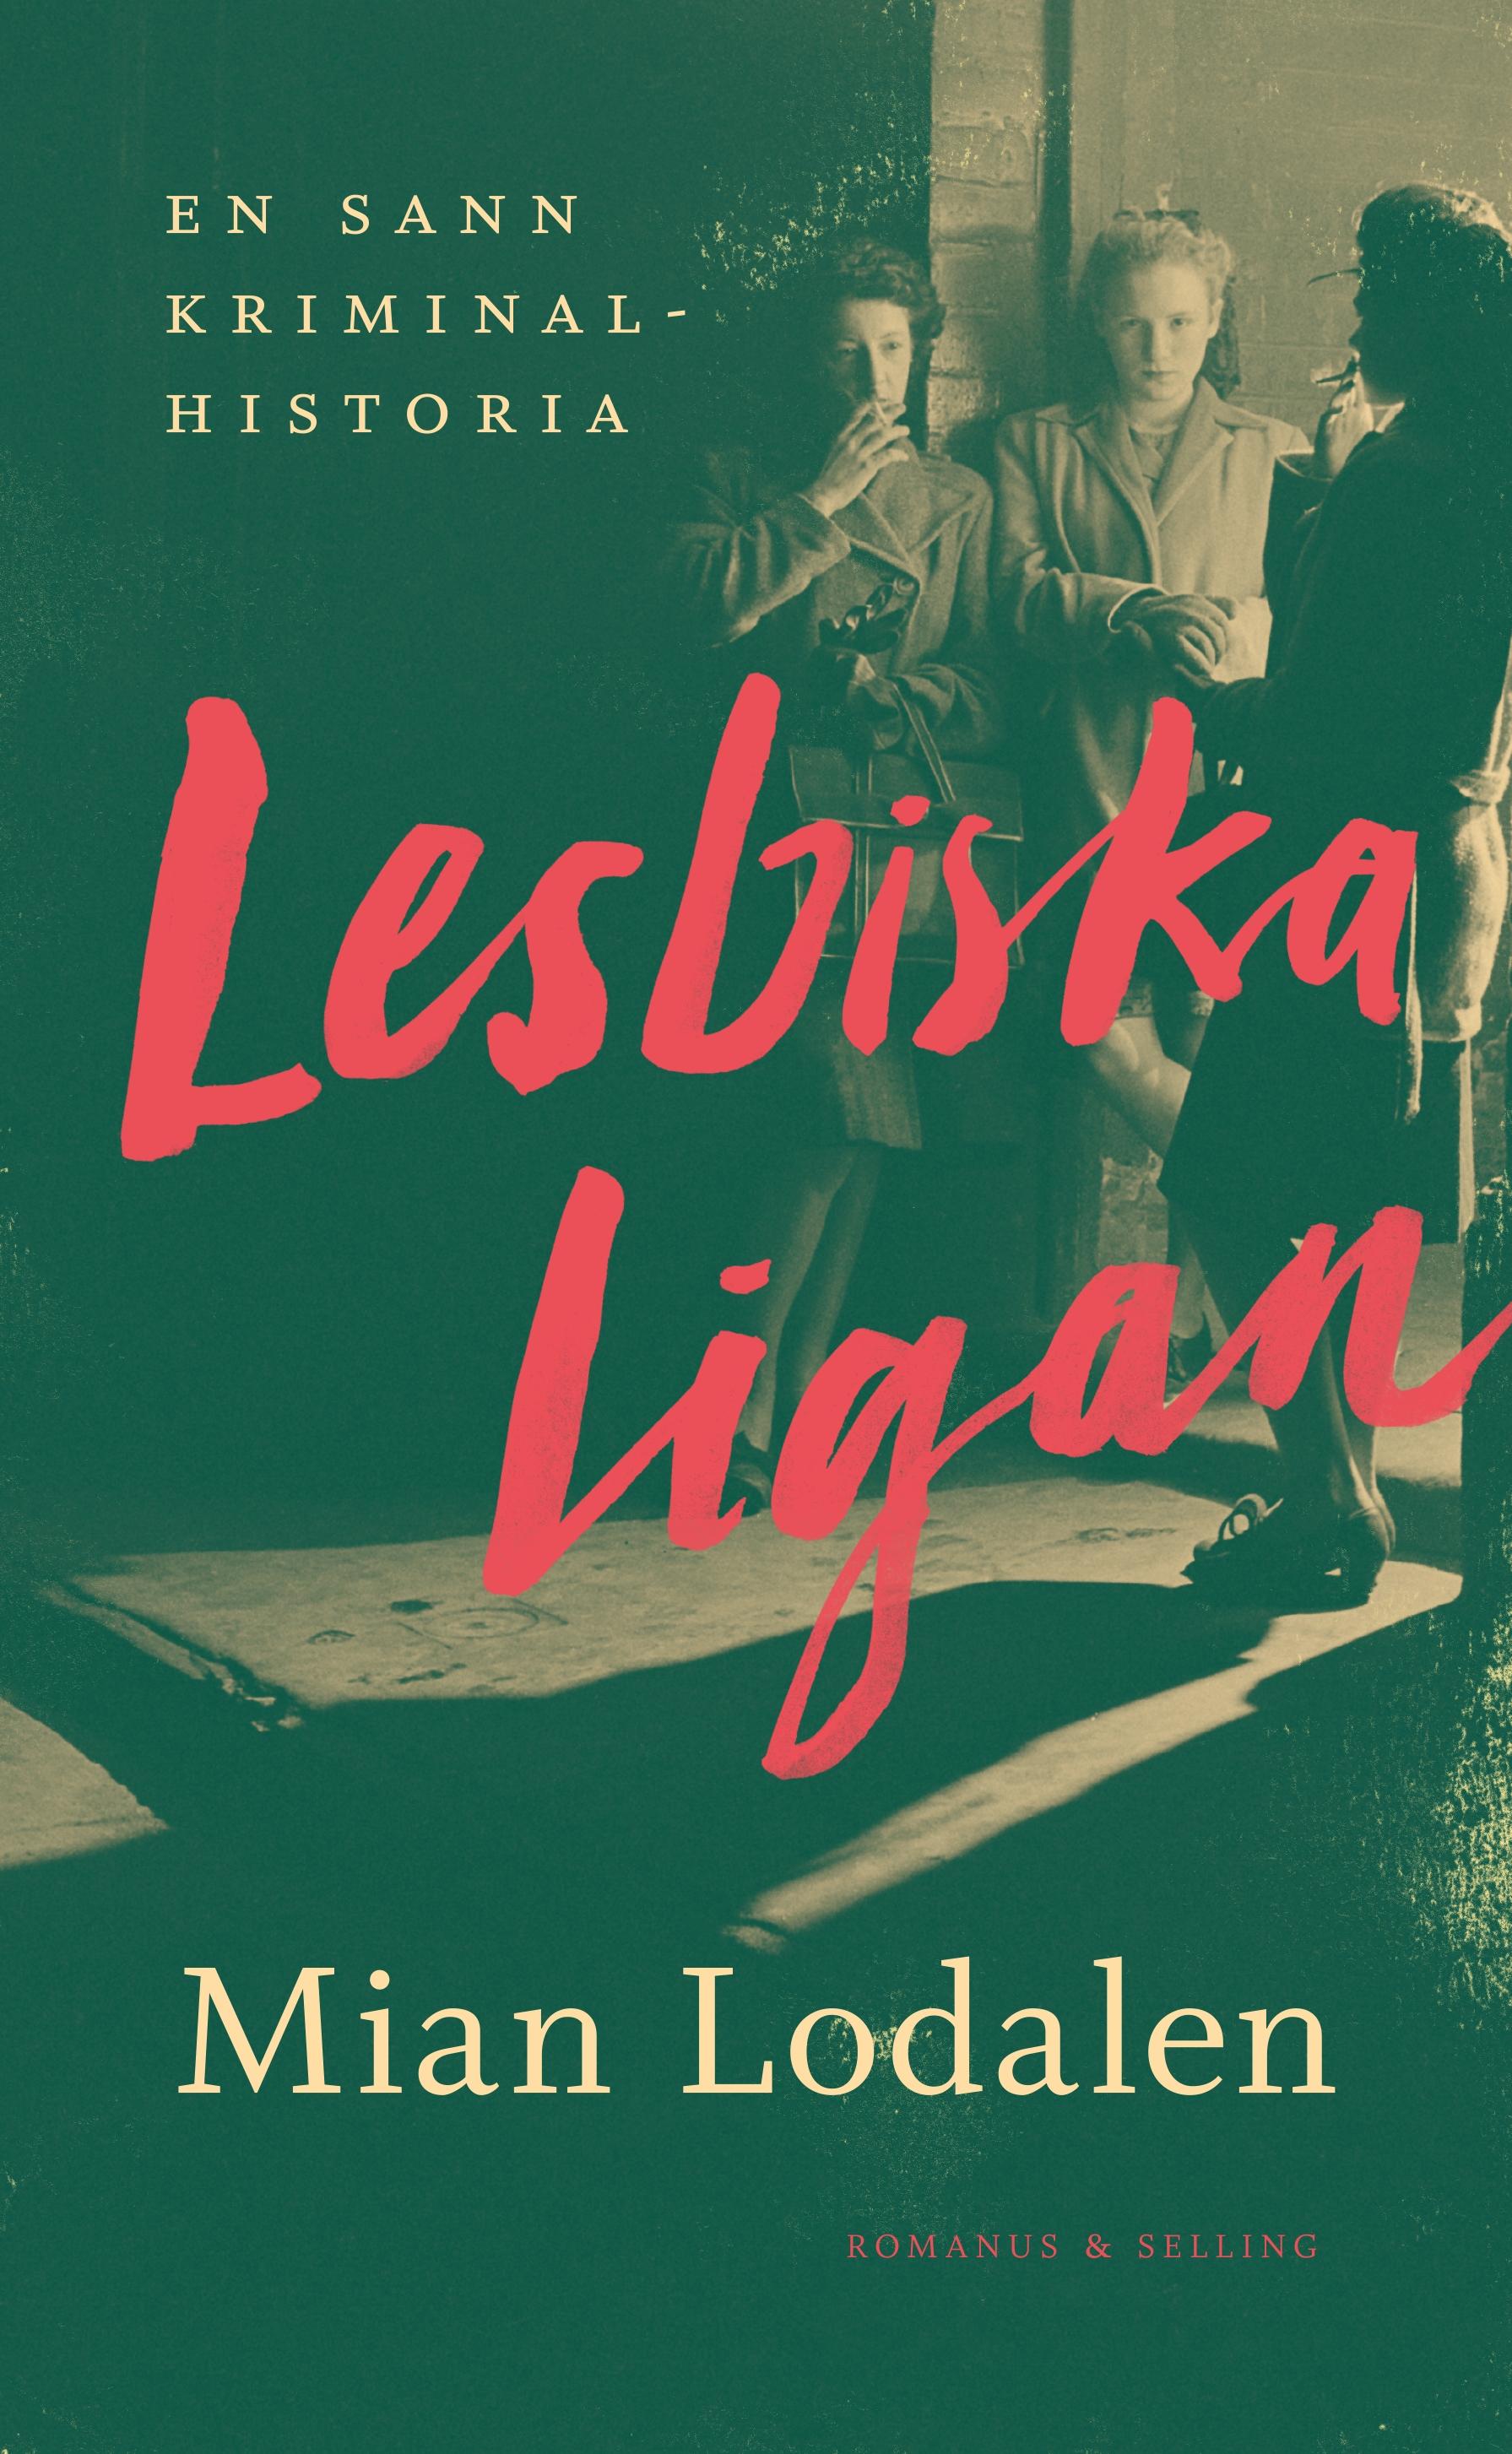 ”Lesbiska ligan” släpps 21 september.